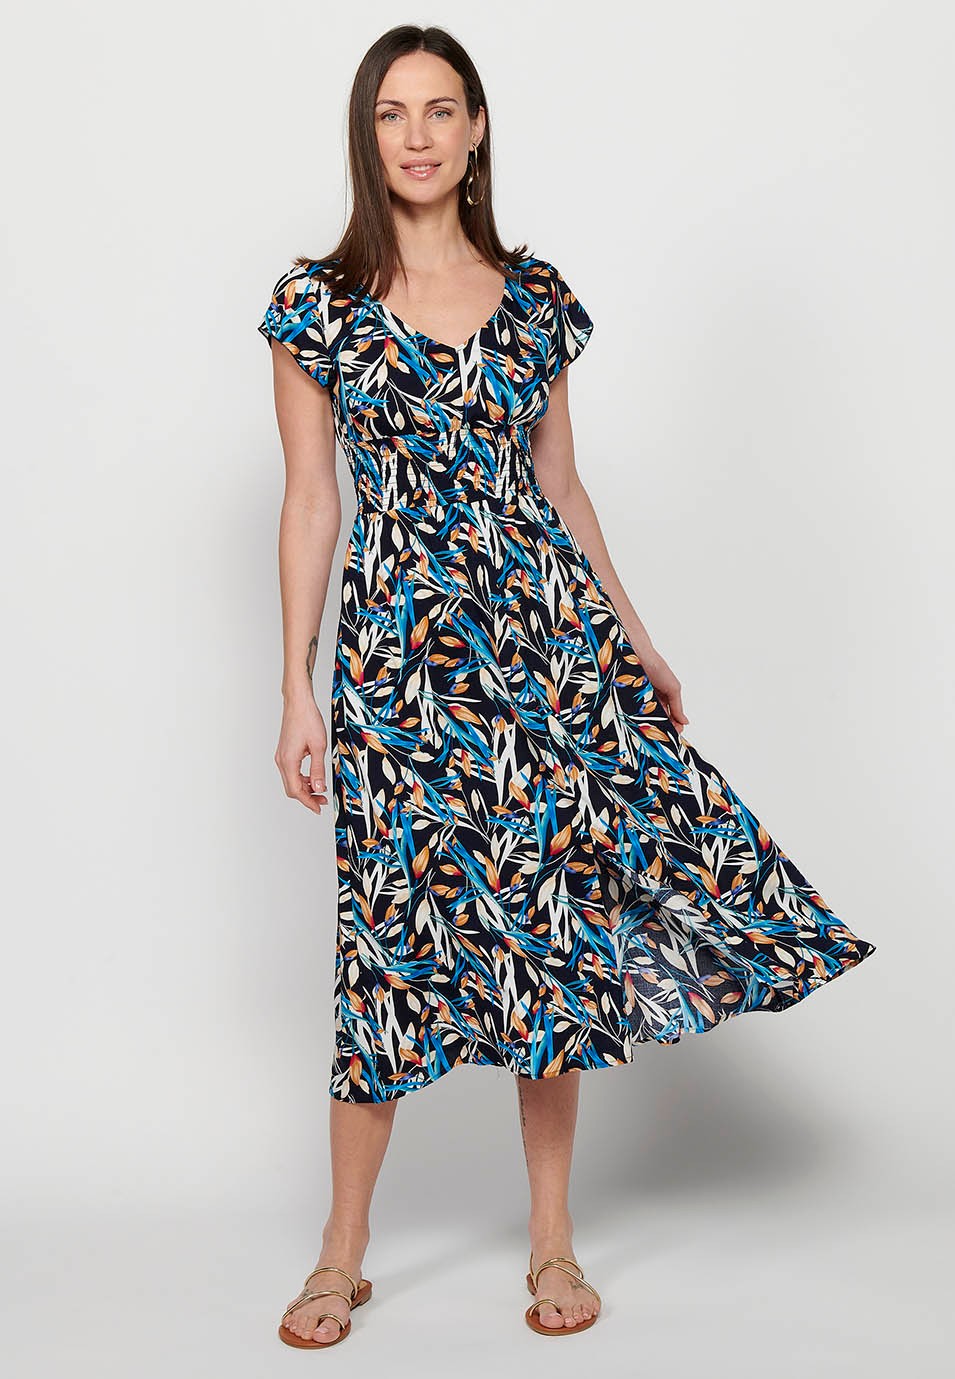 Damen-Kleid mit mehrfarbigem Blumendruck, V-Ausschnitt, kurzen Ärmeln und Schlitz vorne